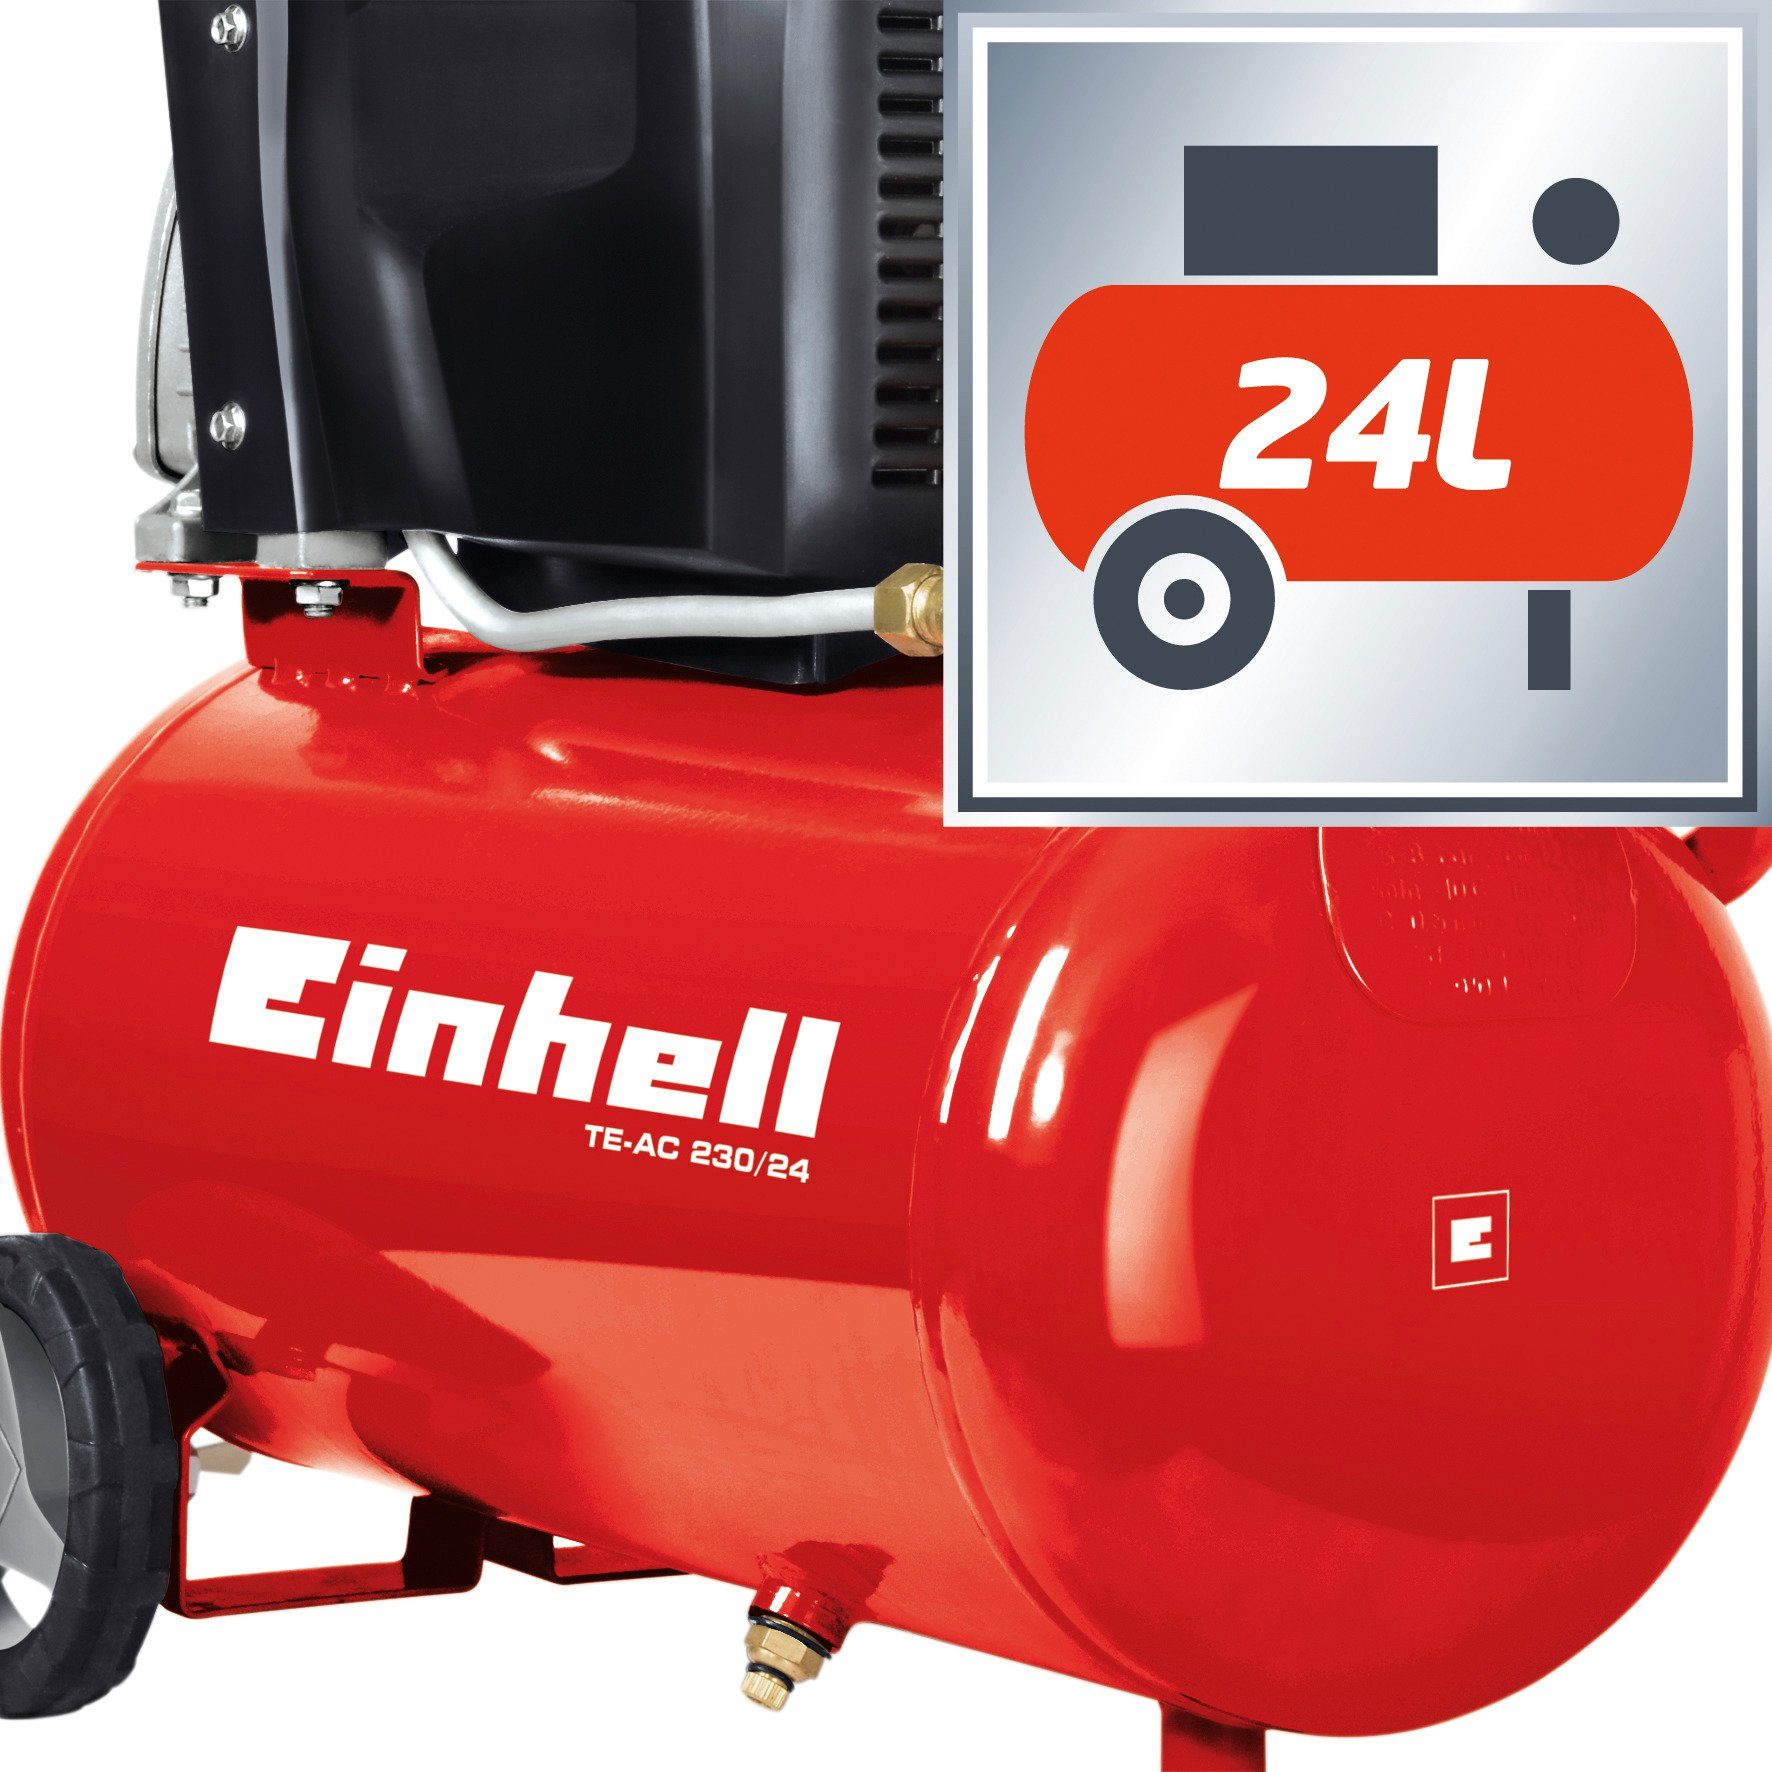 Einhell Kompressor 230/24, 1500 max. bar, 24 l W, TE-AC 8